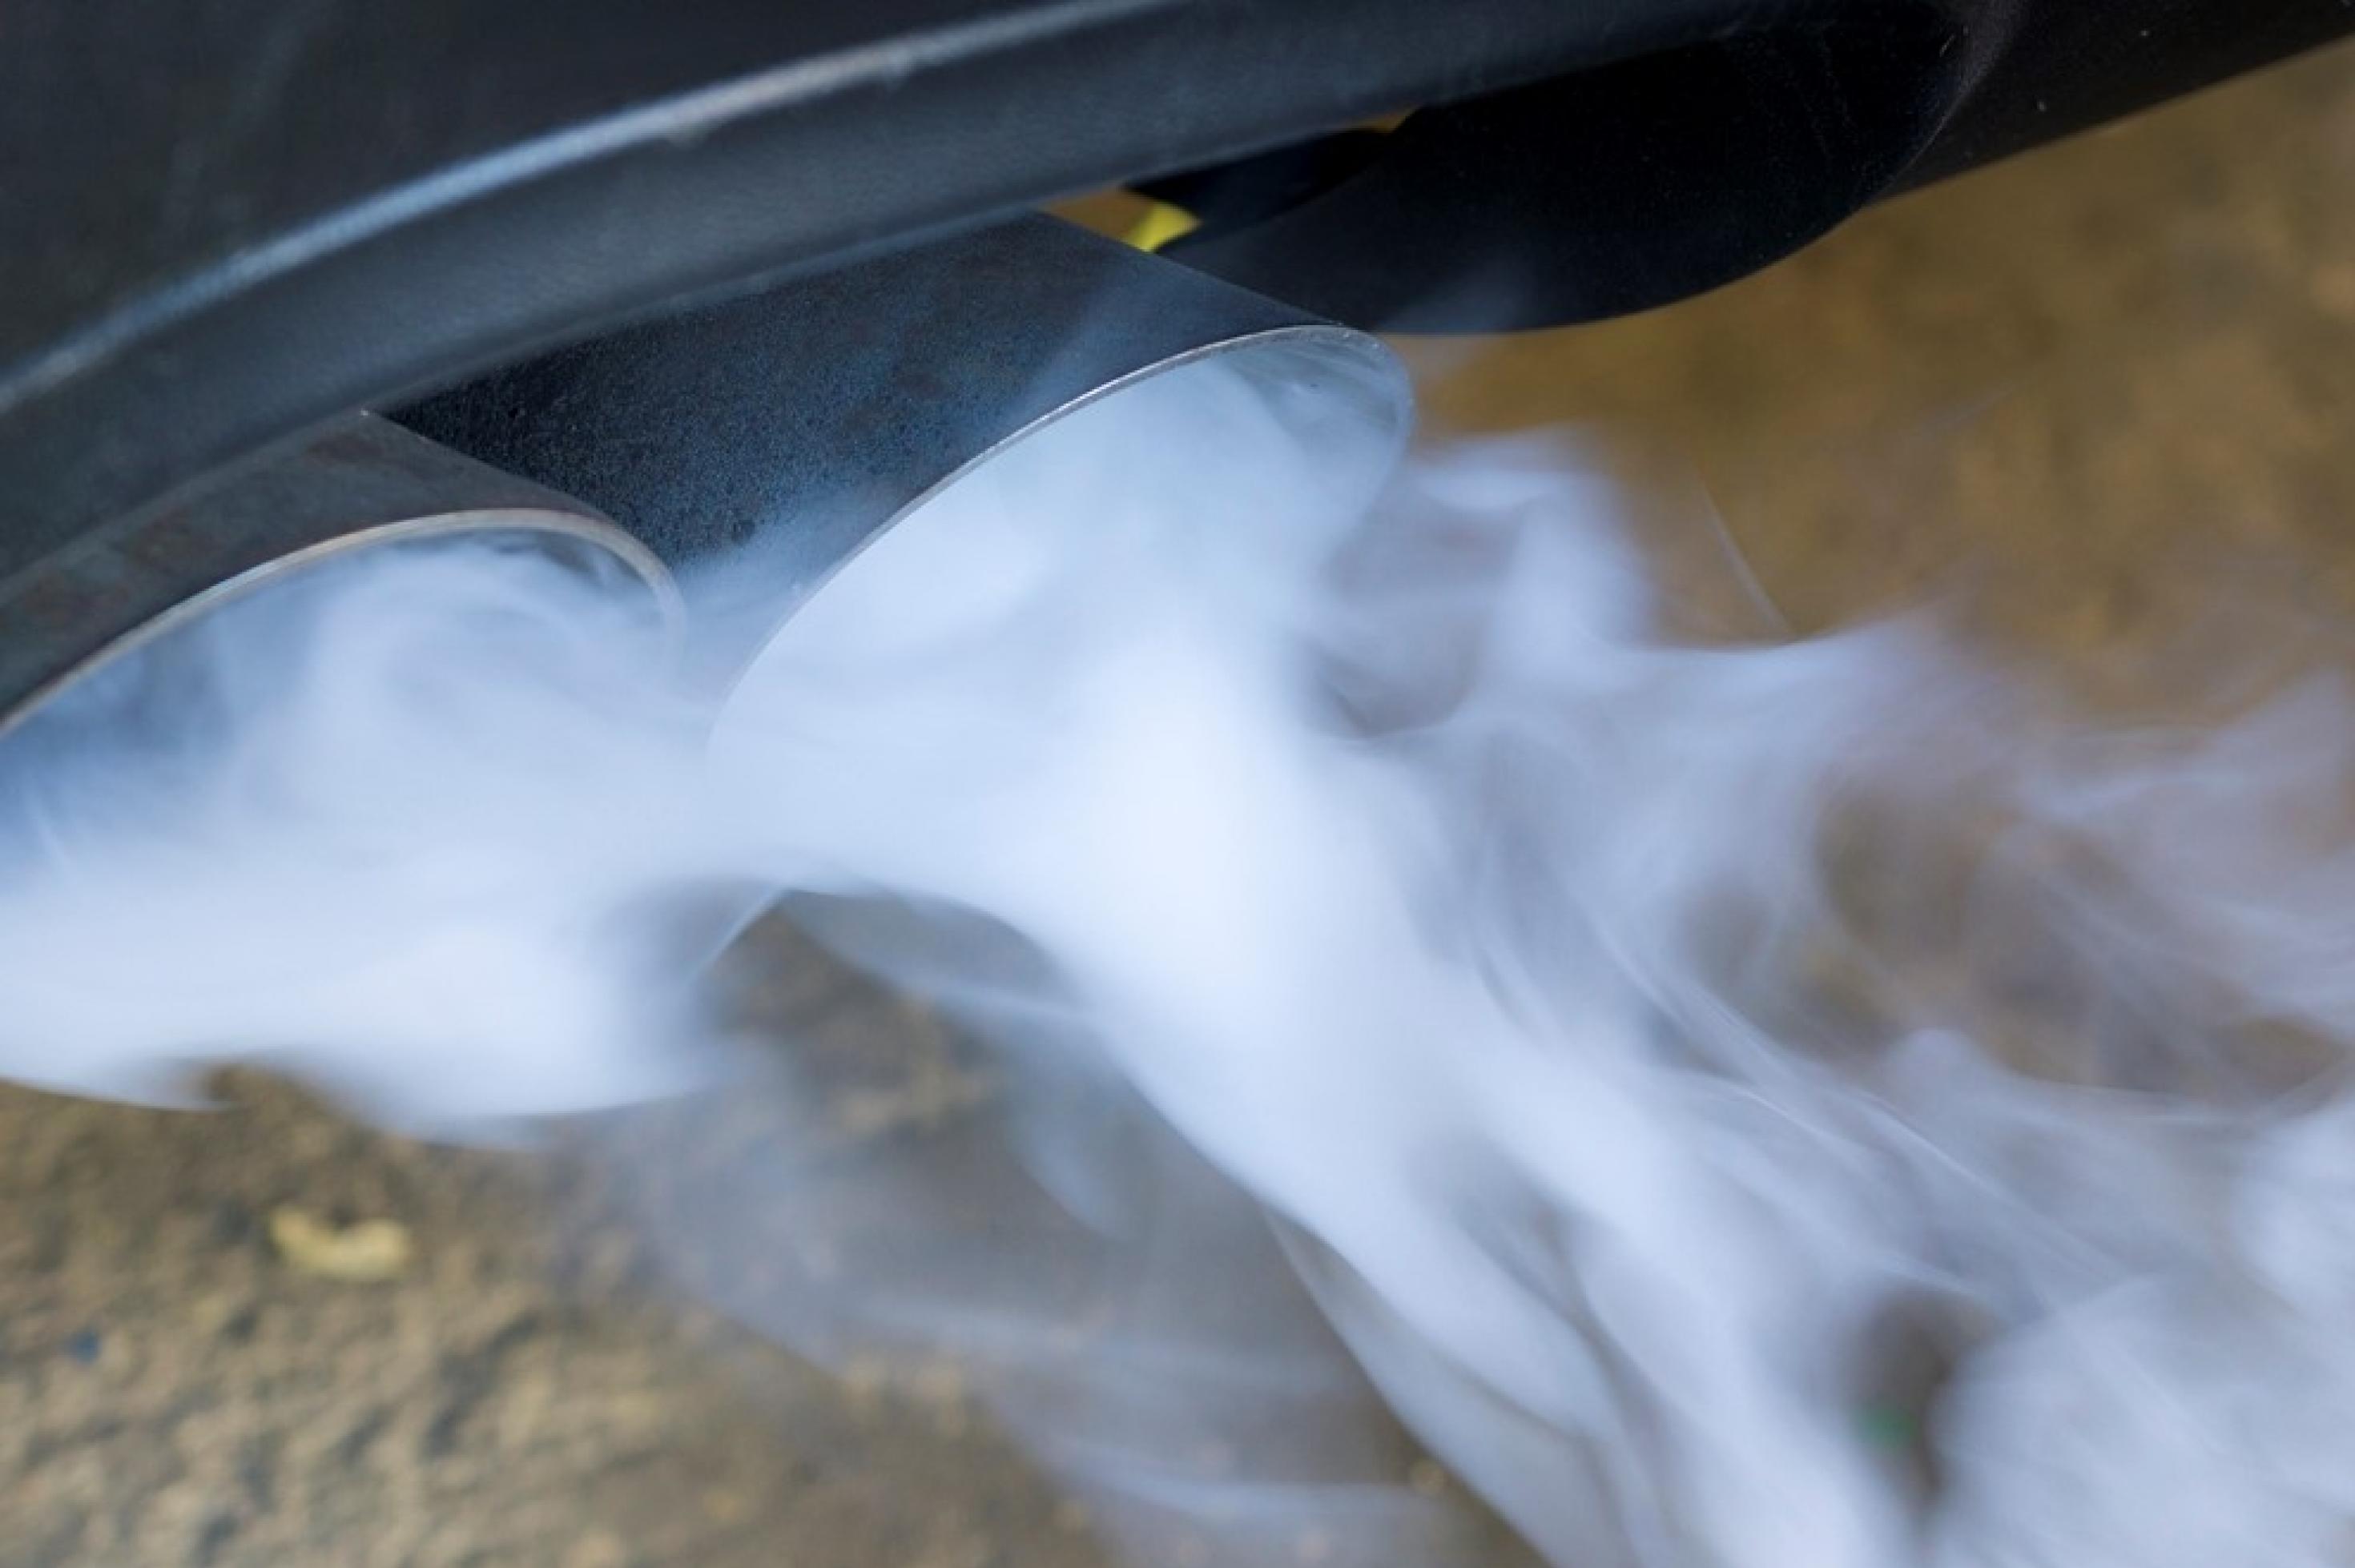 Abgase wie Stickoxide oder Feinstaub werden durch den Auspuff eines Autos ausgestoßen. Symbolbild.